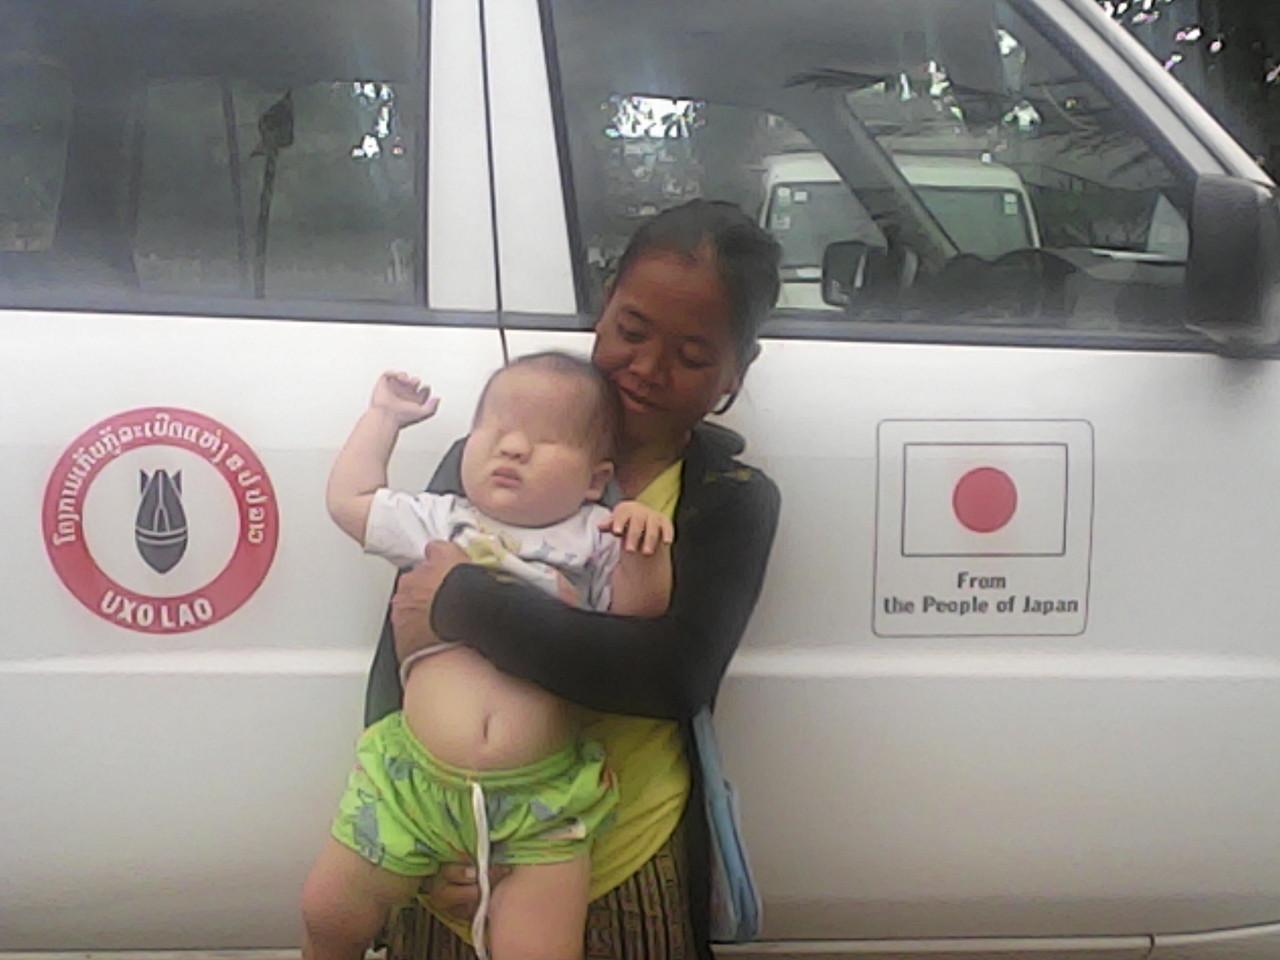 ラオス セコンの街のuxo ラオス政府の不発弾対策機関 に 目がのっぺらぼうの赤ちゃんが連れられてきた たぶん枯葉剤 ダイオキシンの被害者 何とか日本で医療を受けられないものか 12月5日 追記 Sfeという援助組織が見つかりました その他の都市